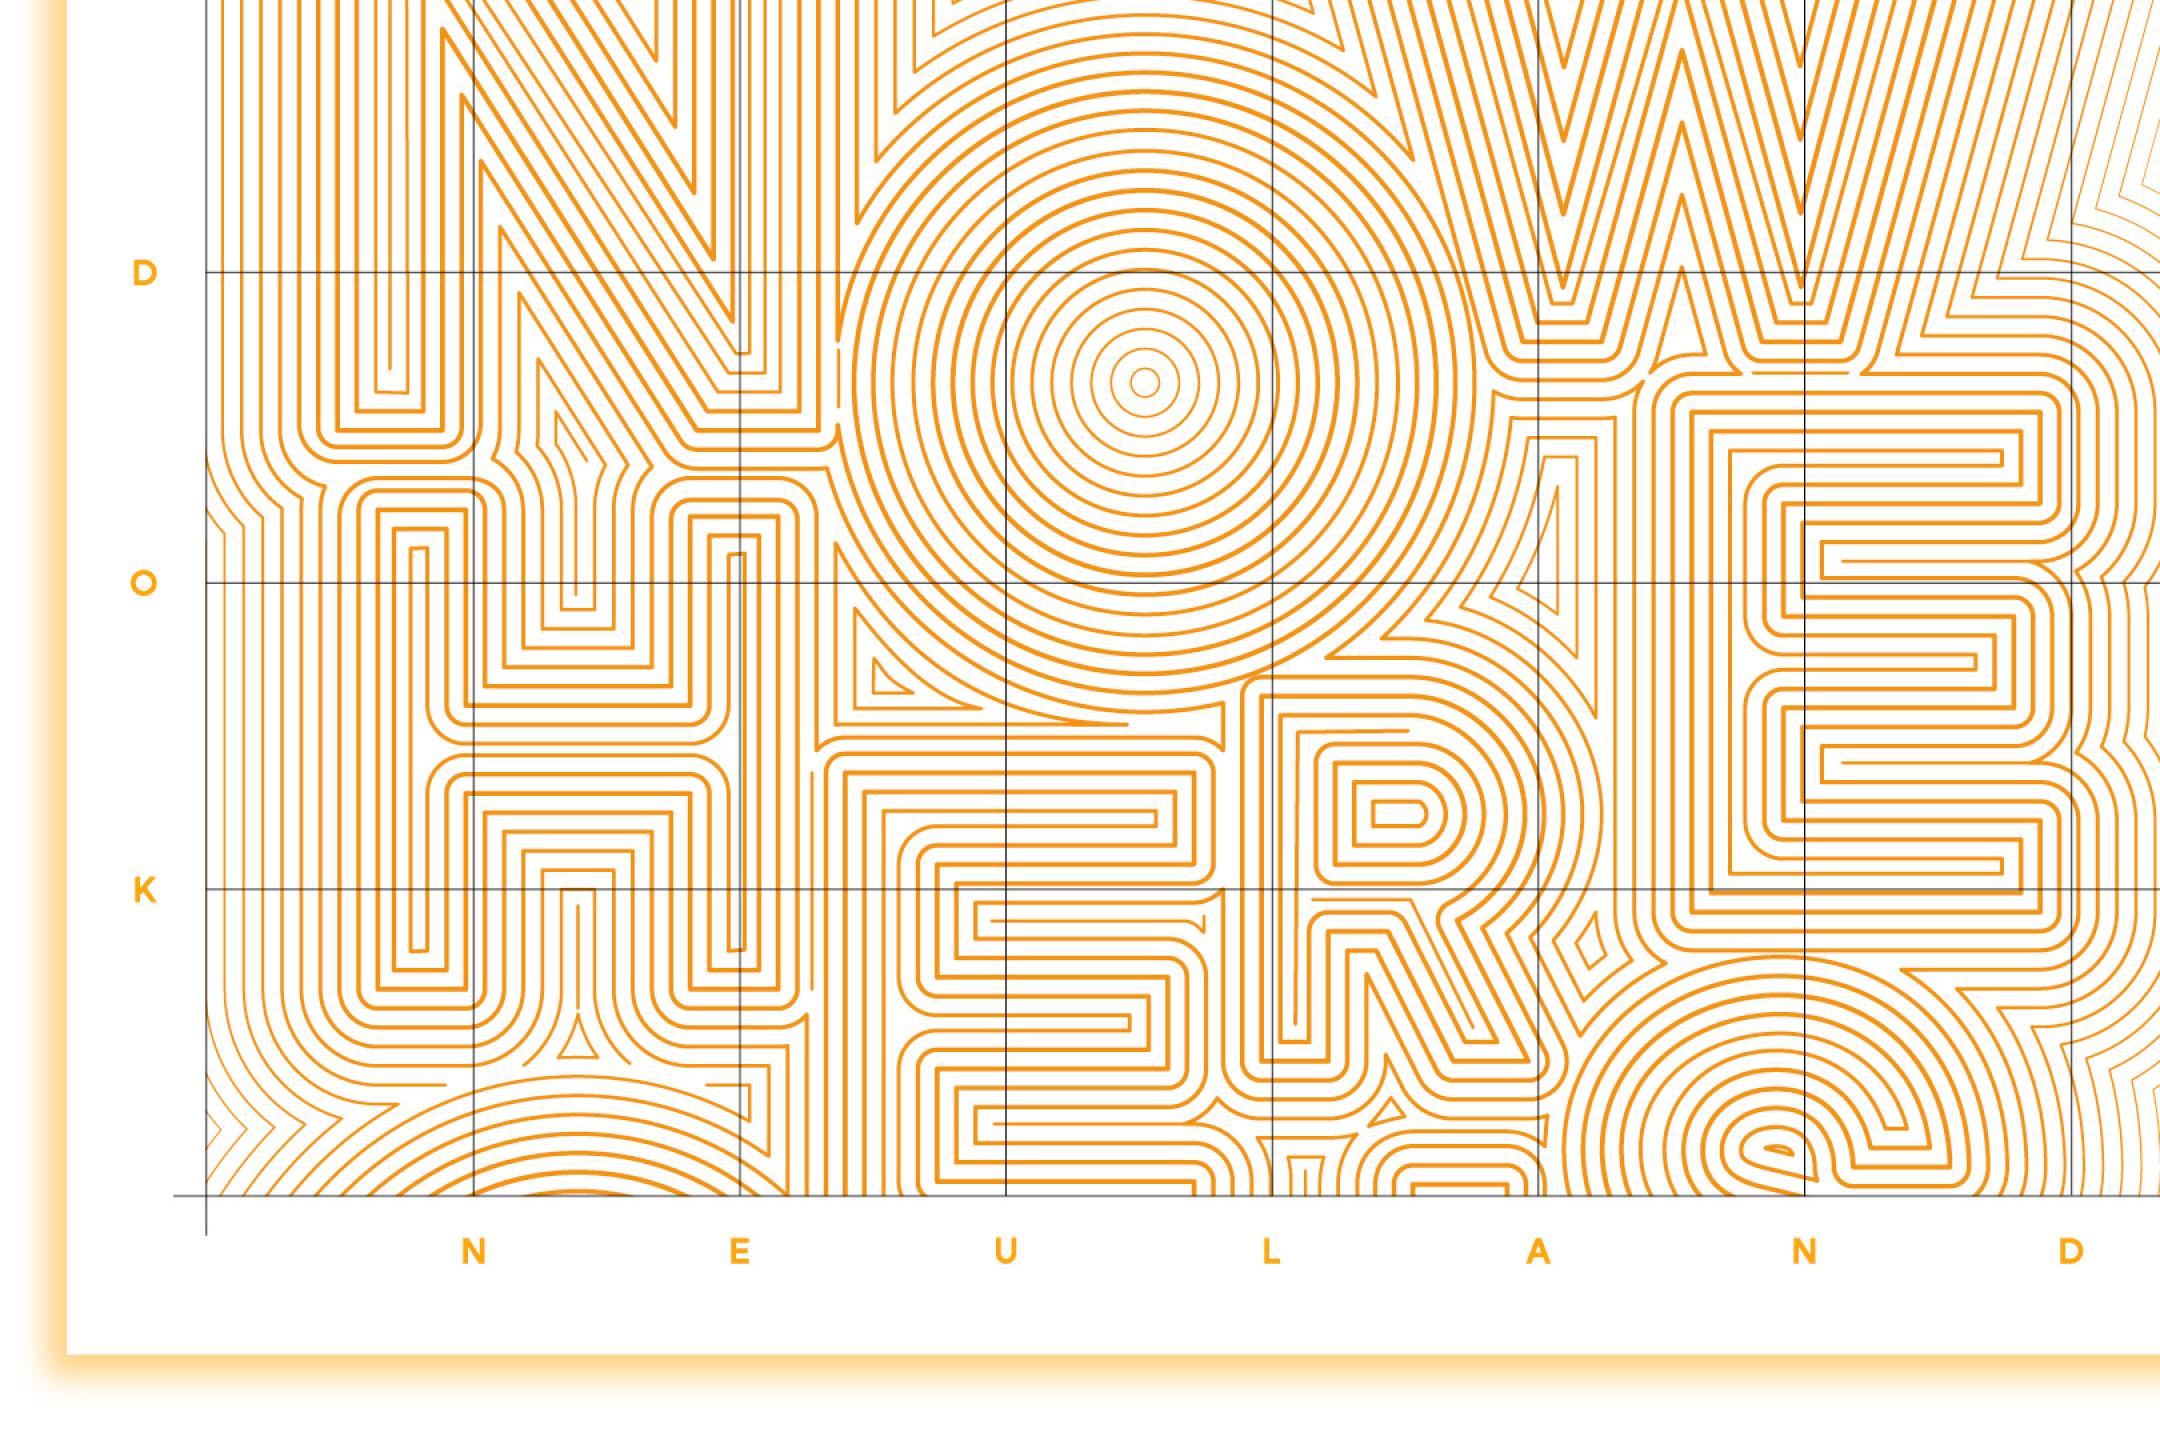 Das Motiv zur Ausstellung DOK Neuland 2023 zeigt eine Karte mit vielen Linien. Nach genauem Betrachten lässt sich dort das Wort "Nowhere" erkennen.